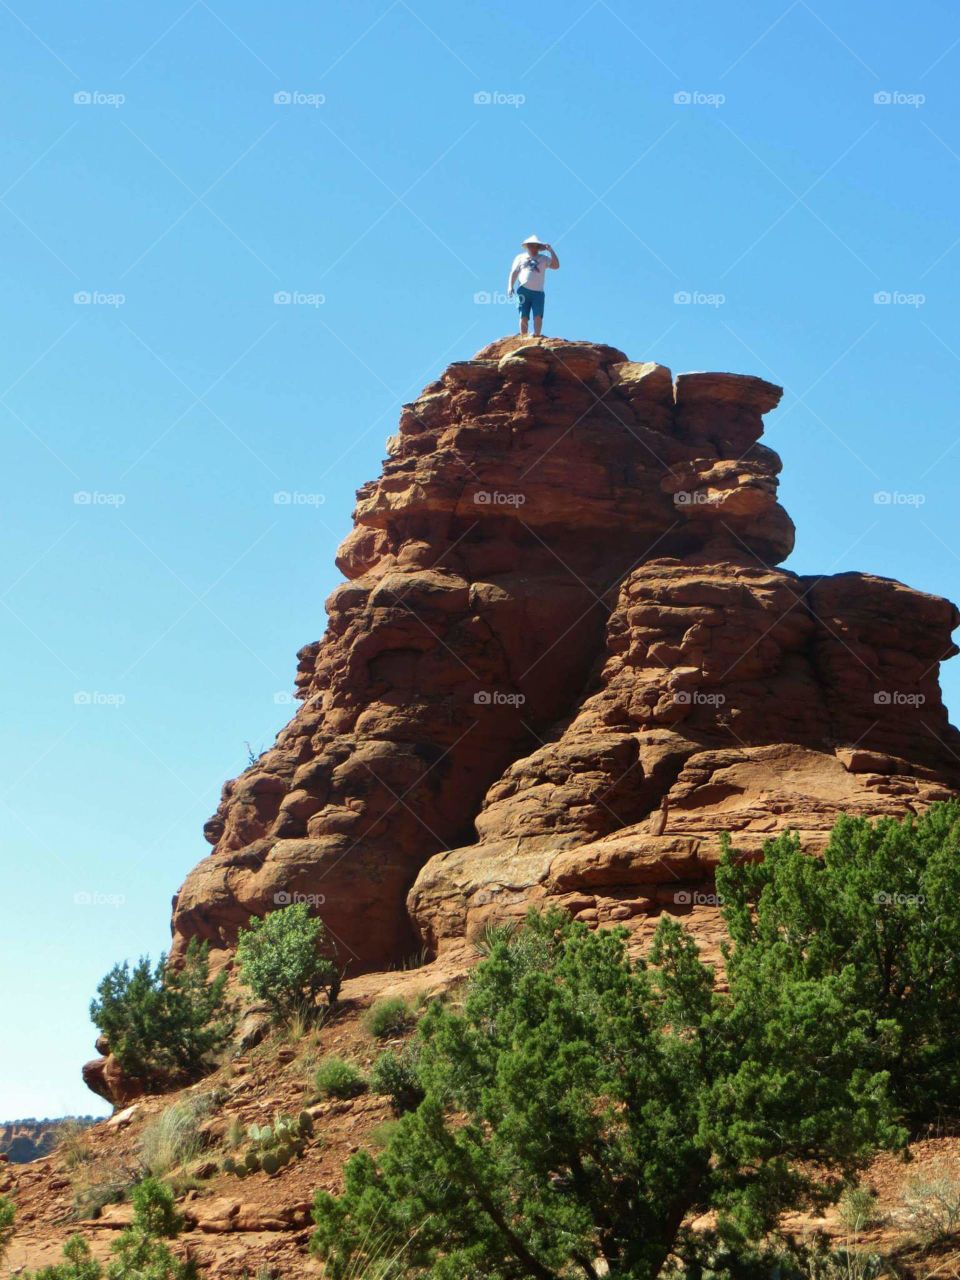 On Top of The World. Man climbing on top of a rock at a vortex in Boynton Canyon, Sedona, AZ